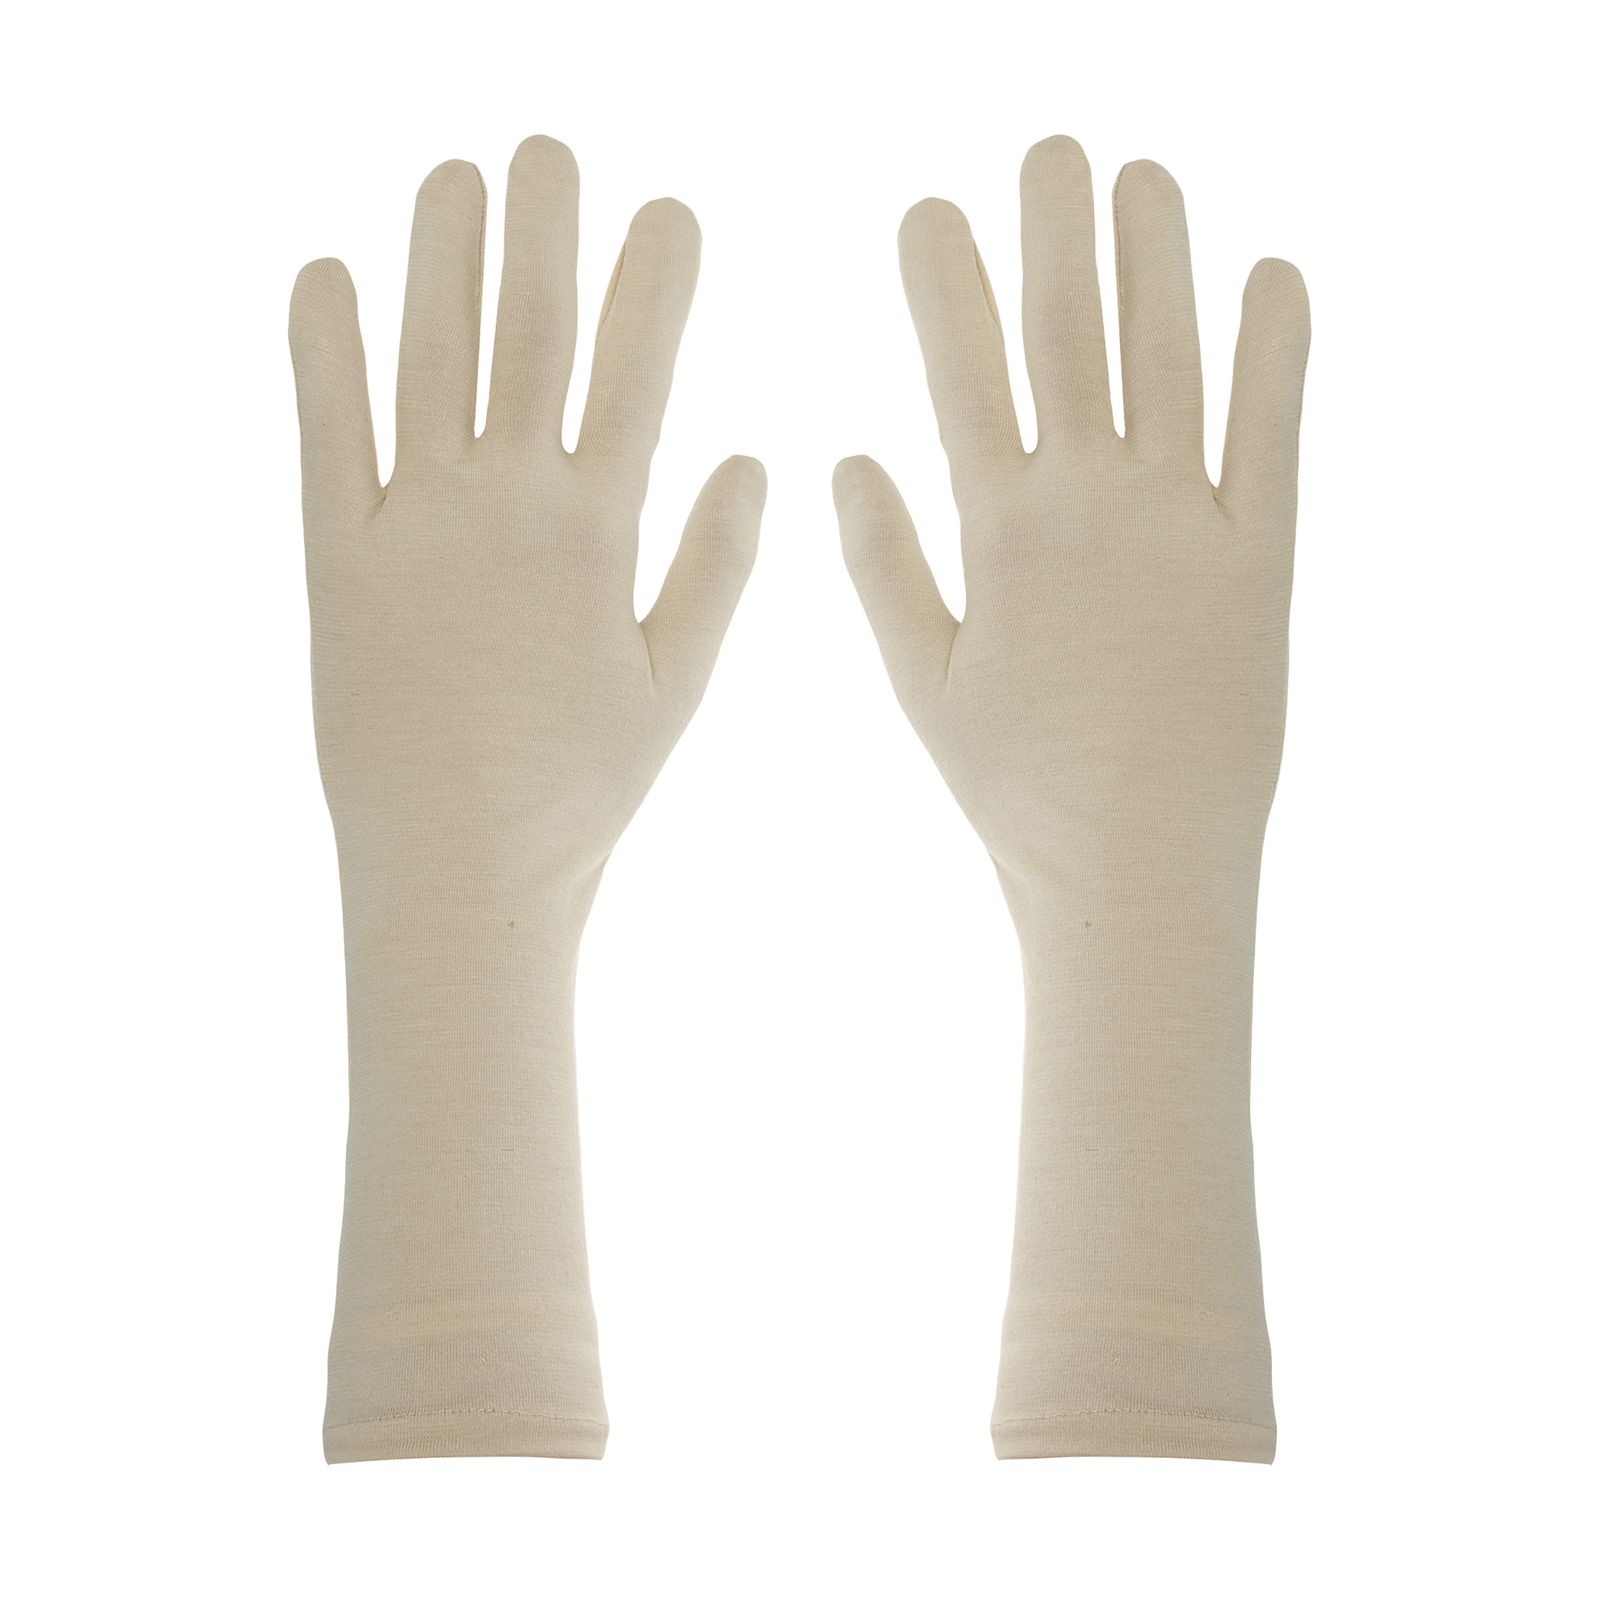 دستکش زنانه کد 308 -  - 1